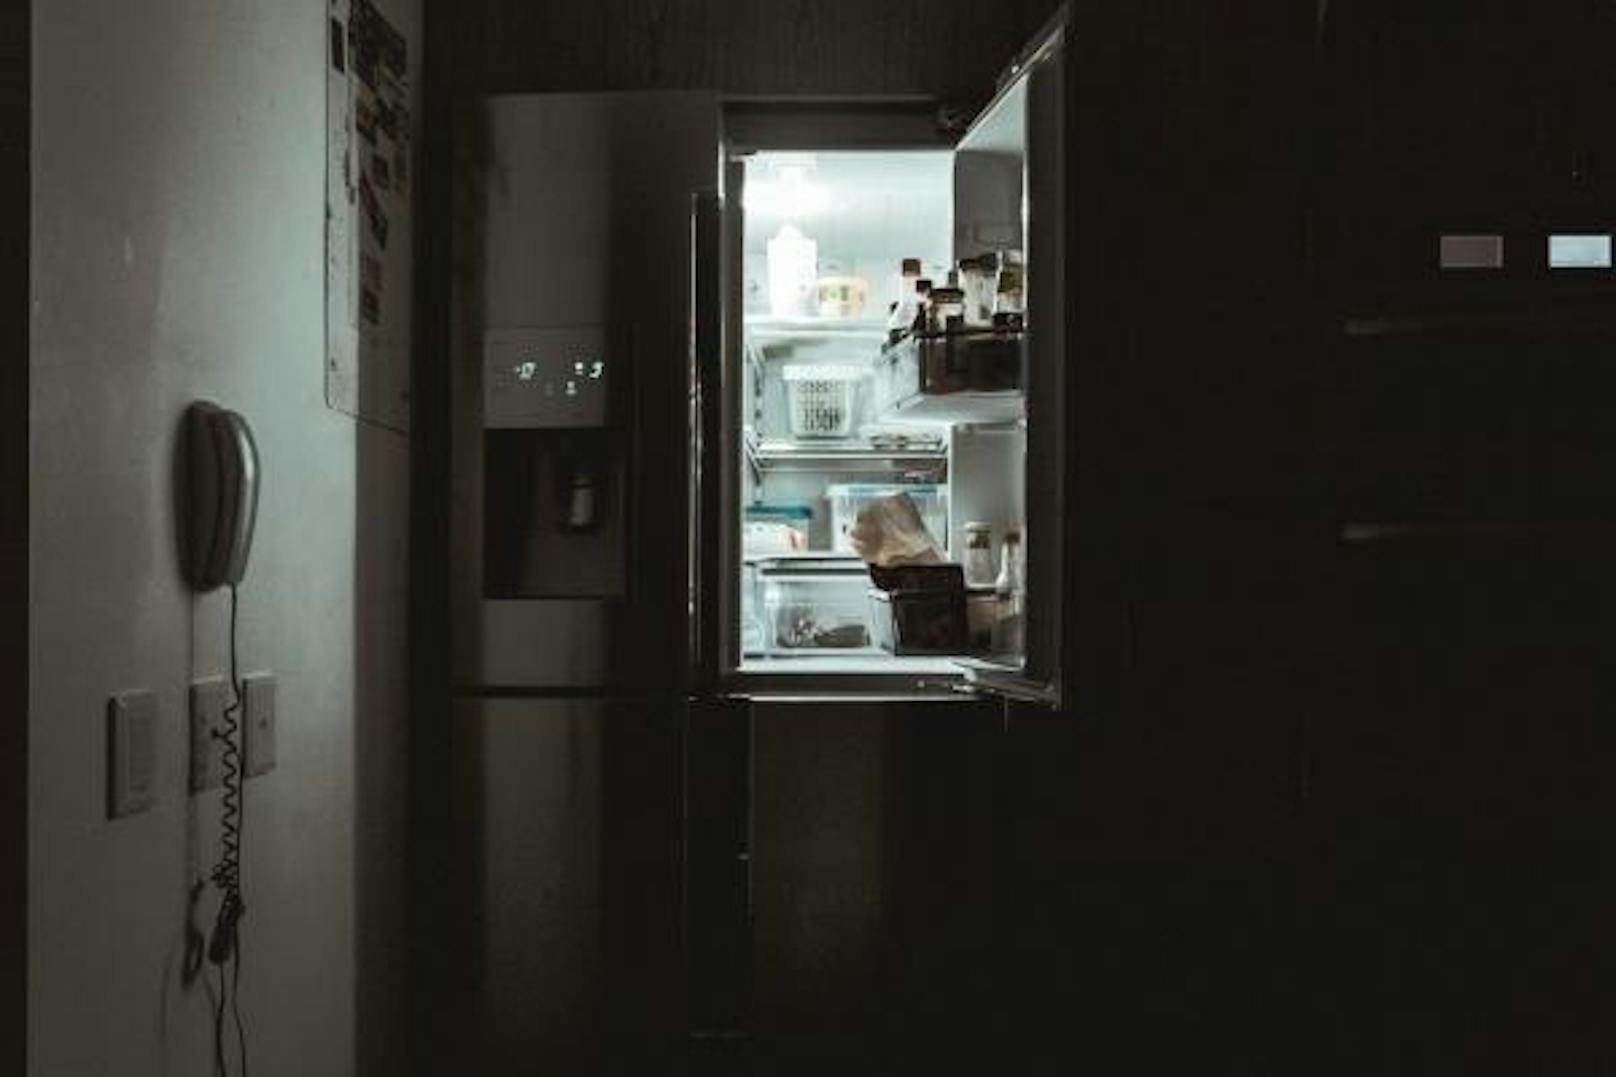 <b>Kühlschrank kalt genug?</b>
Falls es aus dem Kühlschrank riecht, solltest du den erst mal ausräumen: Schlechte Gerüche im Kühlschrank stammen meist von verdorbenen Lebensmitteln. Falls das Problem danach aber immer noch besteht, könnte es an der Temperatur liegen.